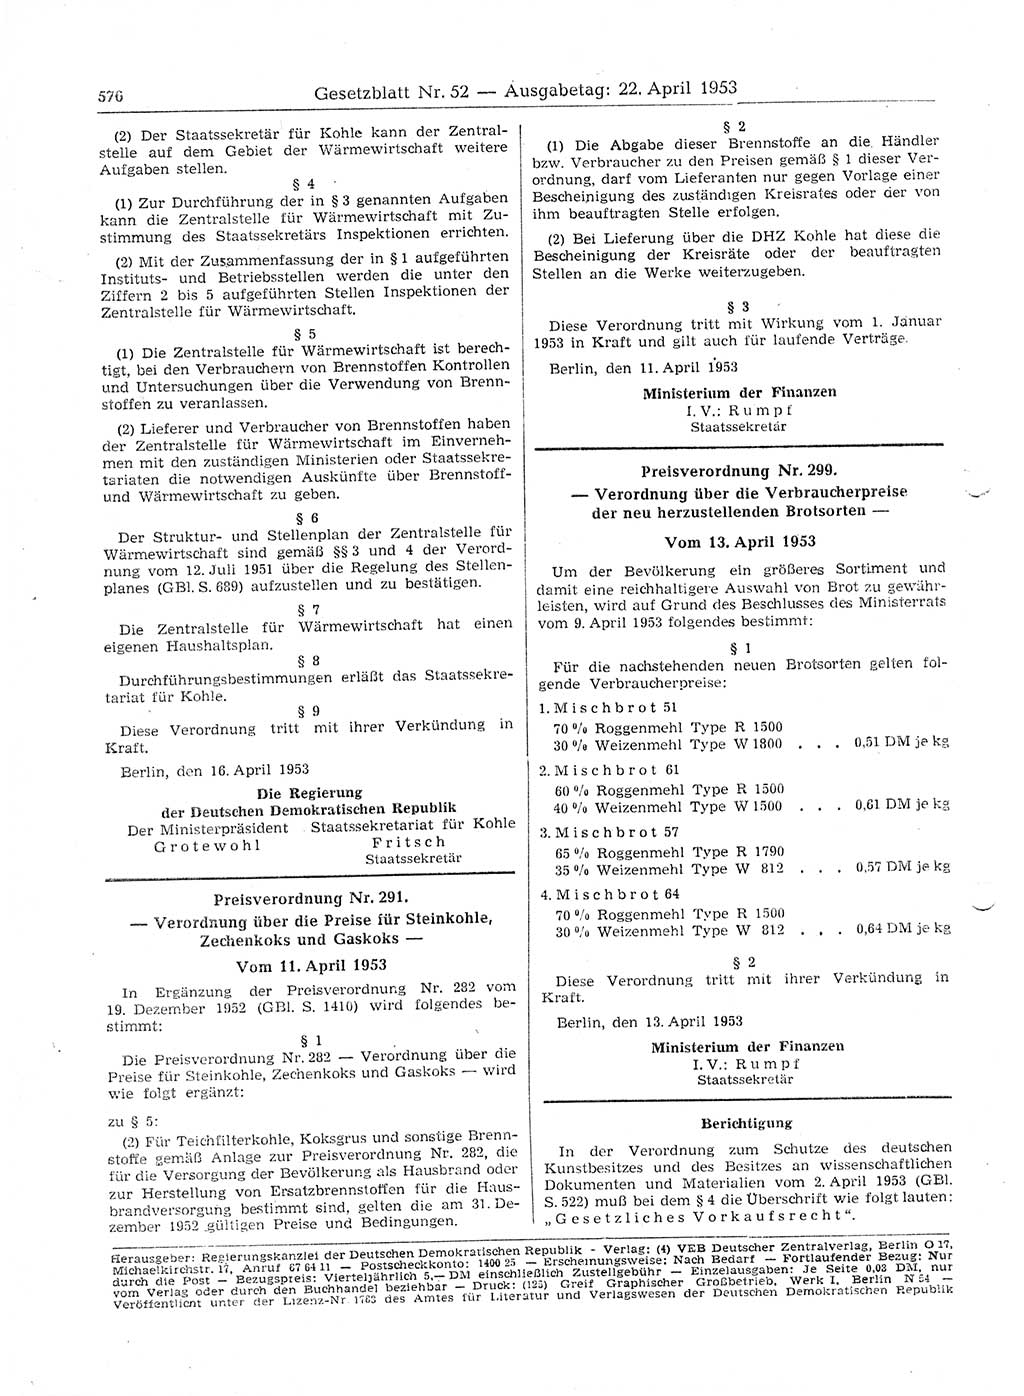 Gesetzblatt (GBl.) der Deutschen Demokratischen Republik (DDR) 1953, Seite 576 (GBl. DDR 1953, S. 576)